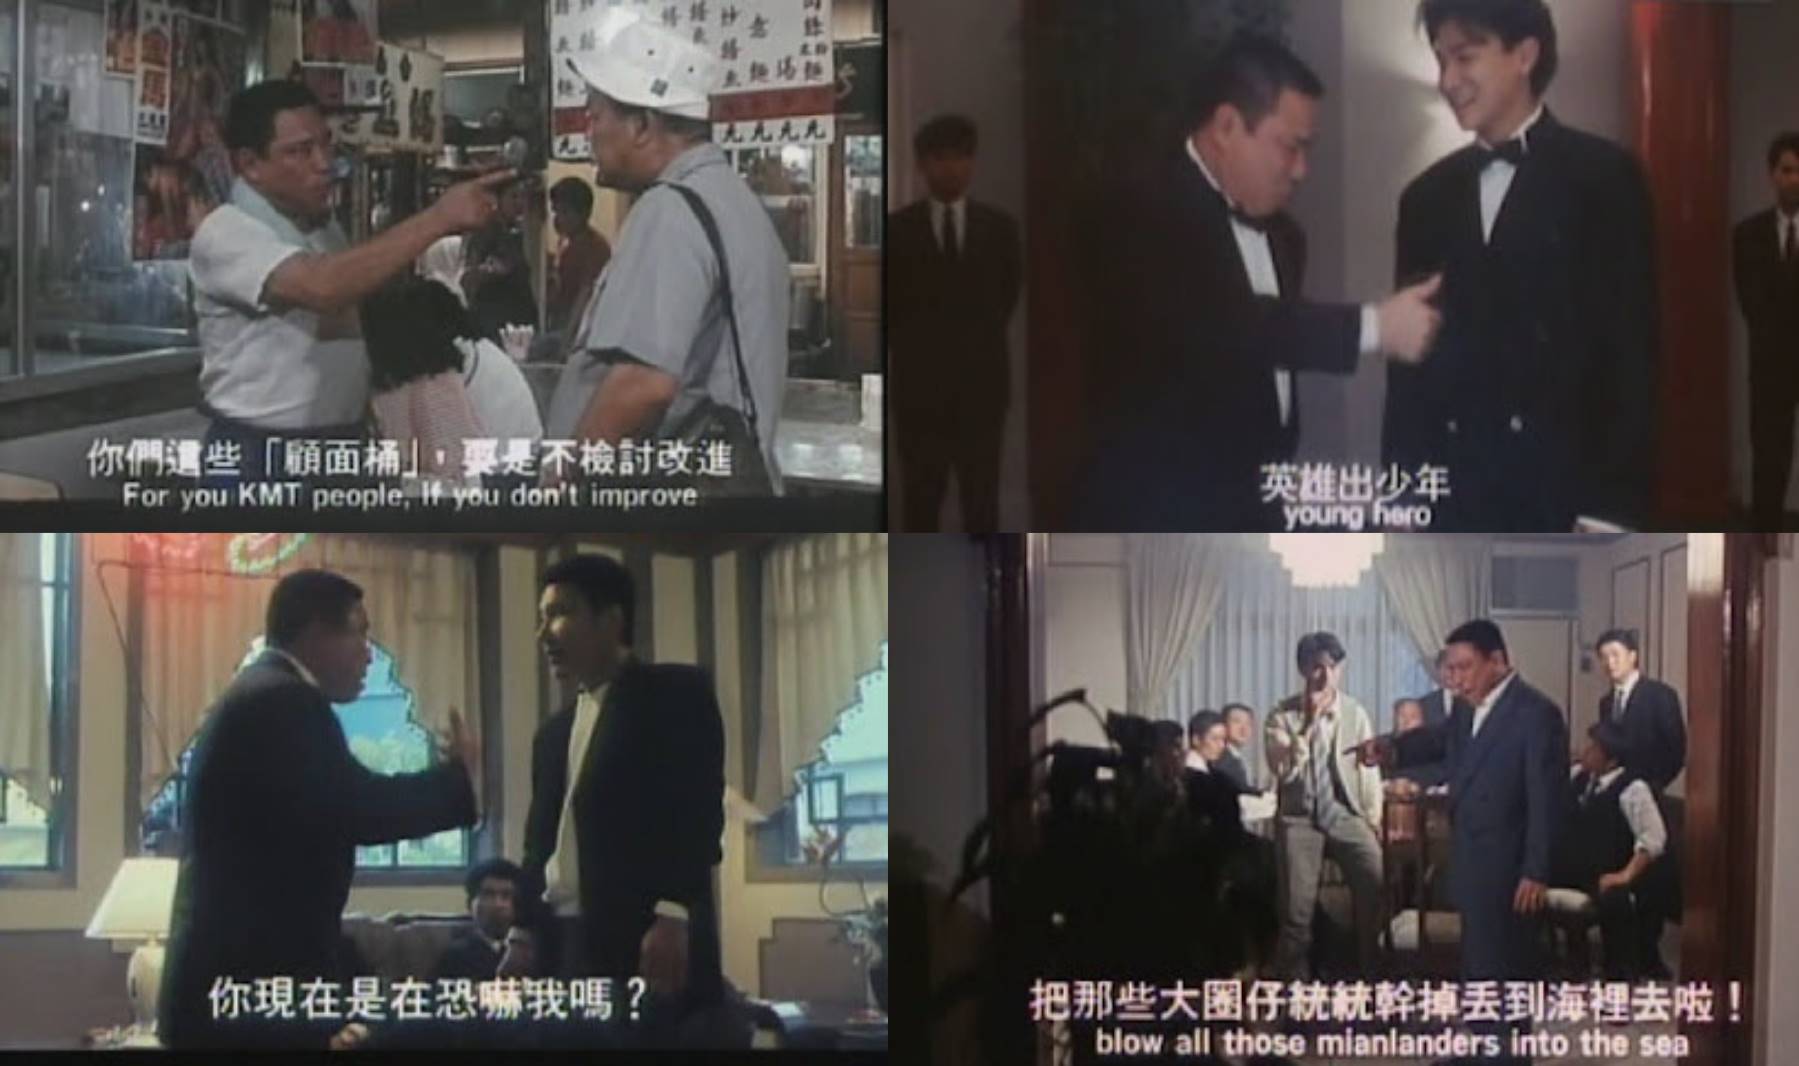 陳松勇曾影過不少知名國片，像是《那根所有權》、《至尊記狀元才》、《阿呆》、《五湖四海》，其中《悲情城市》更是讓他奪下金馬影帝。